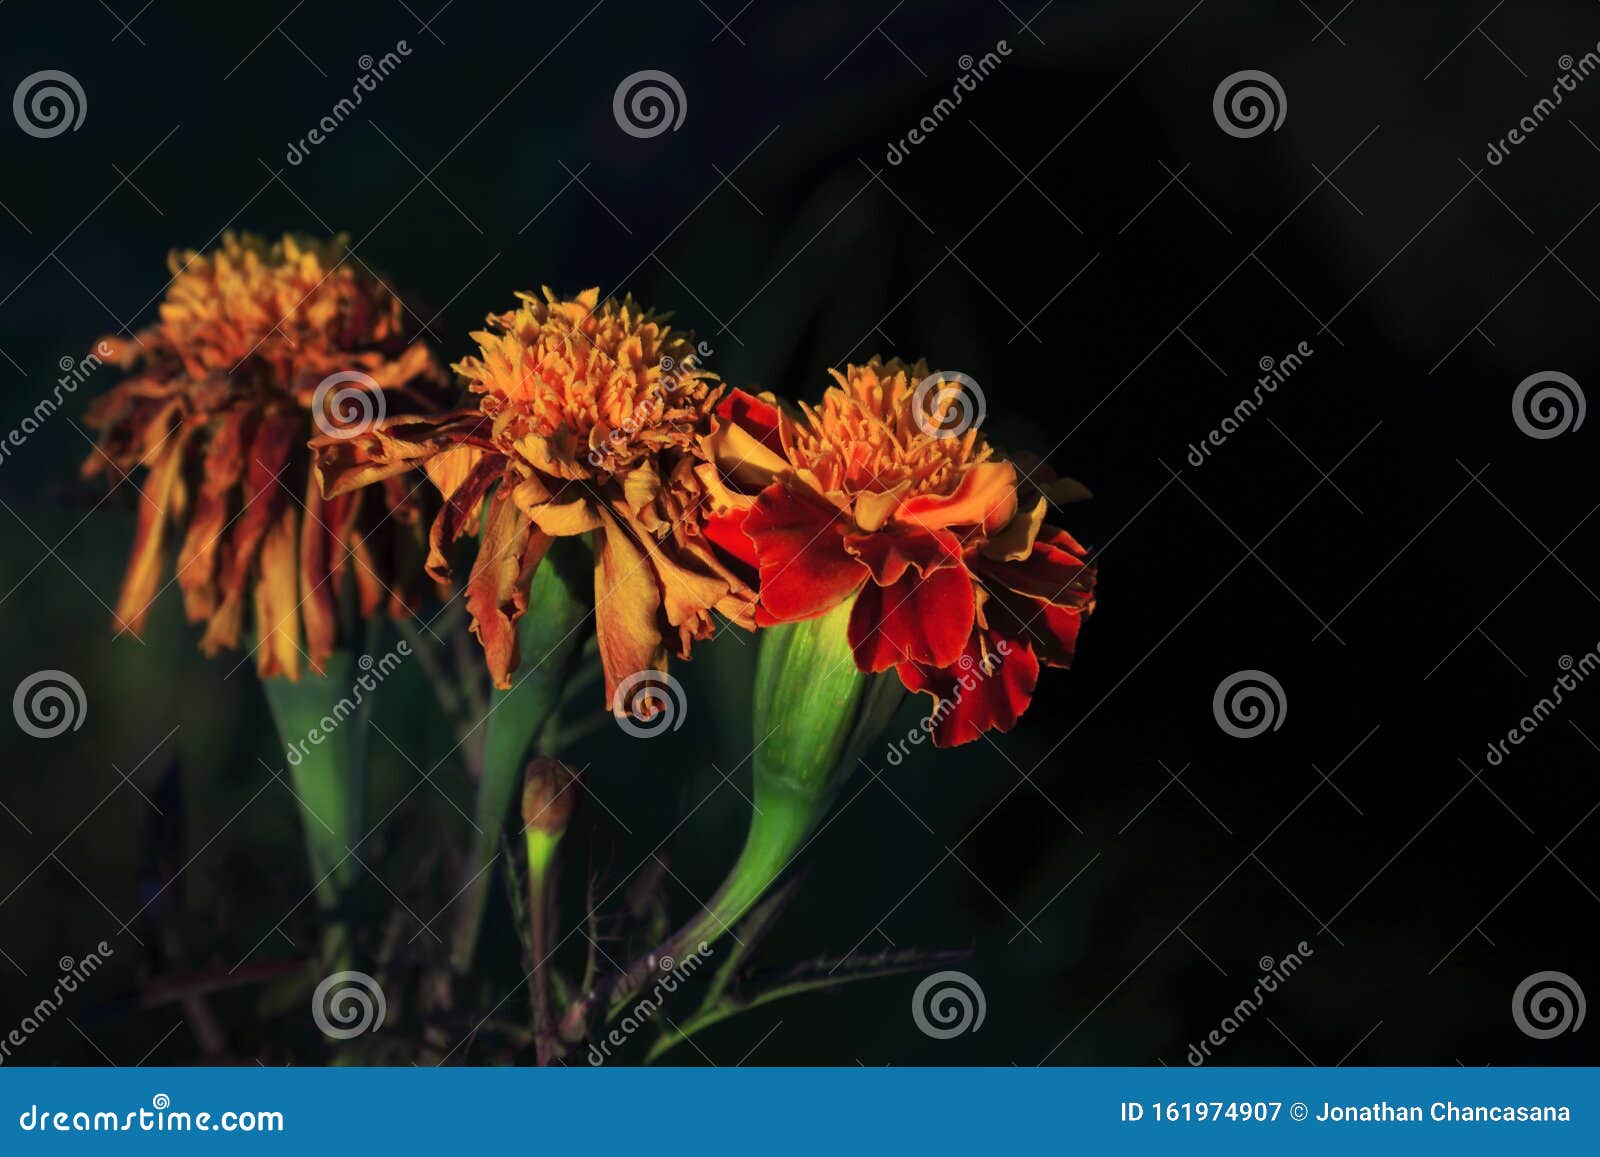 edades de la flor - clavel dianthus caryophyllus